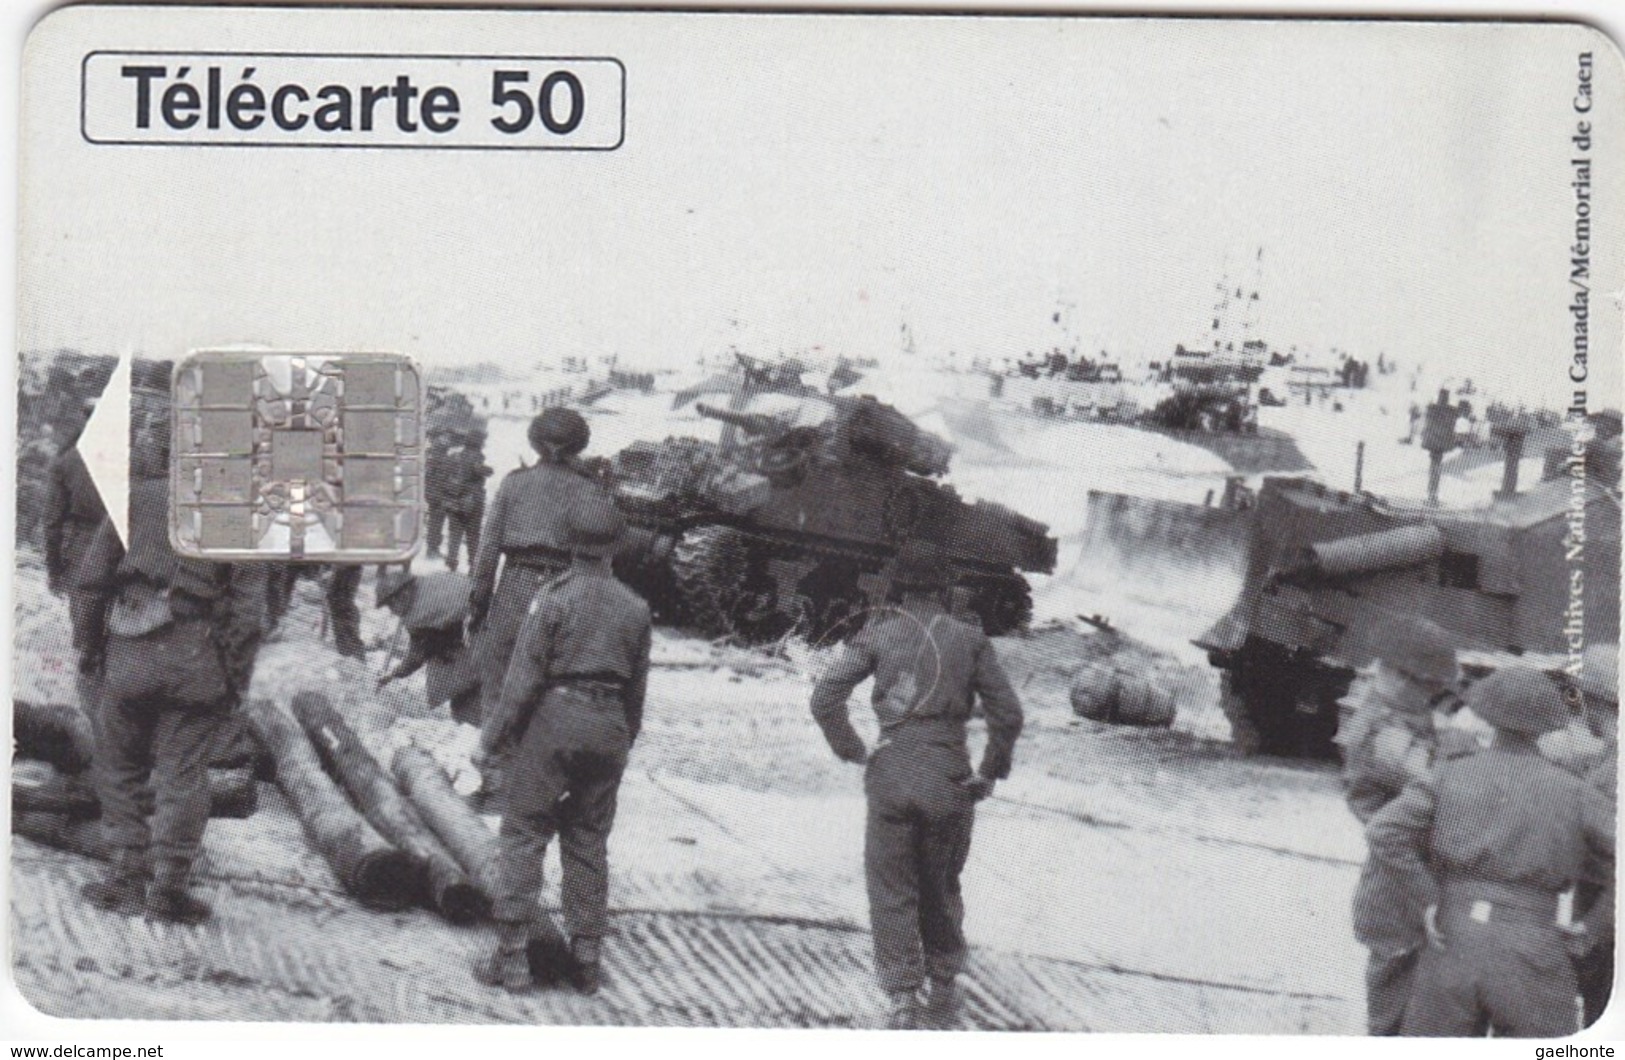 TC118 TÉLÉCARTE 50 UNITÉS - 1944-1994 - 50ème ANNIVERSAIRE DES DEBARQUEMENTS... - COURSEULLE SUR MER 06 JUIN 1944 - Armée